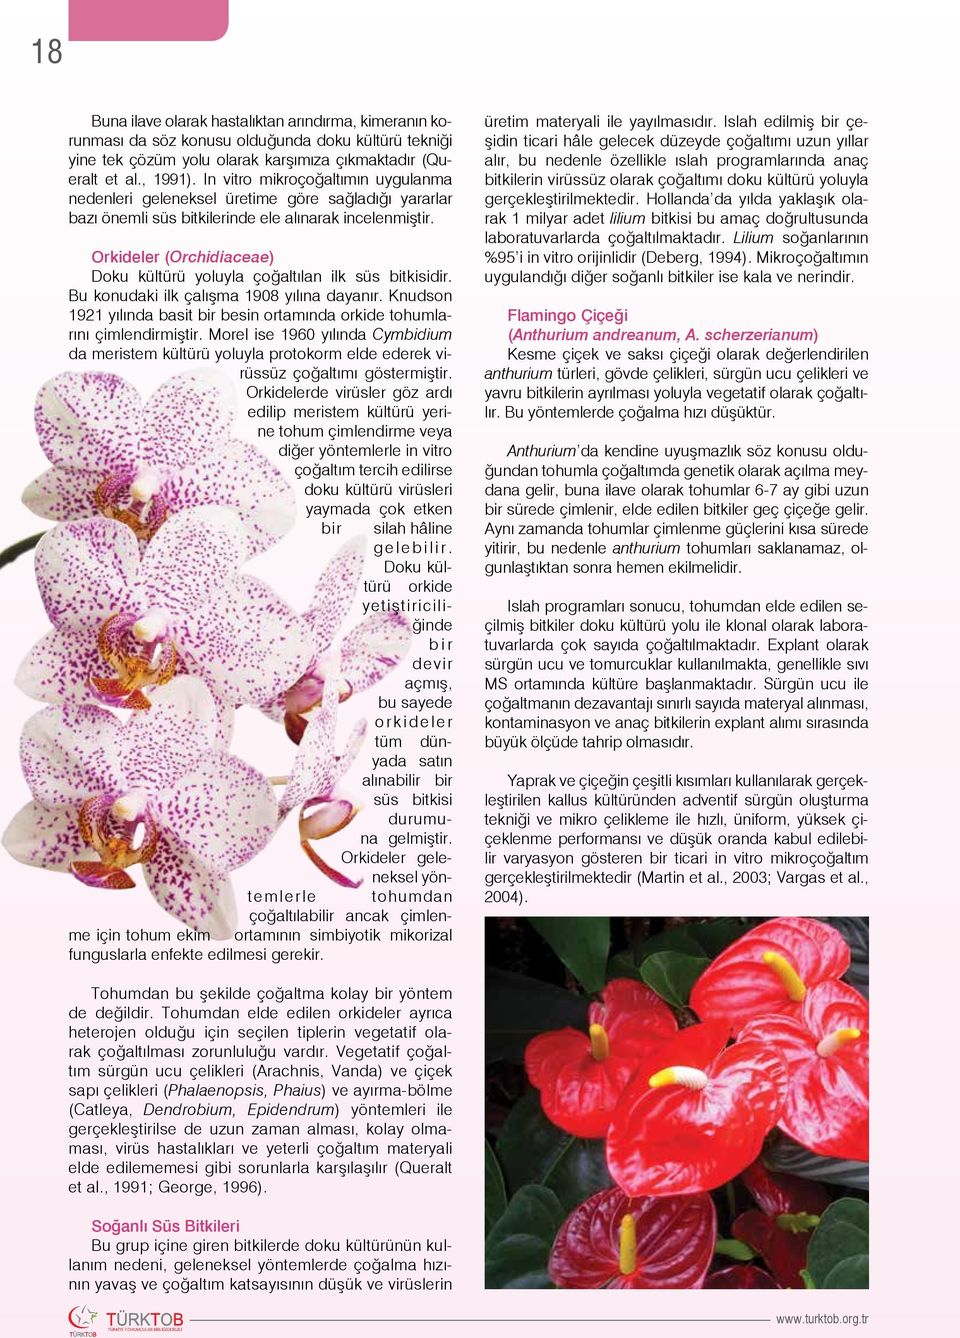 Orkideler (Orchidiaceae) Doku kültürü yoluyla çoğaltılan ilk süs bitkisidir. Bu konudaki ilk çalışma 1908 yılına dayanır.